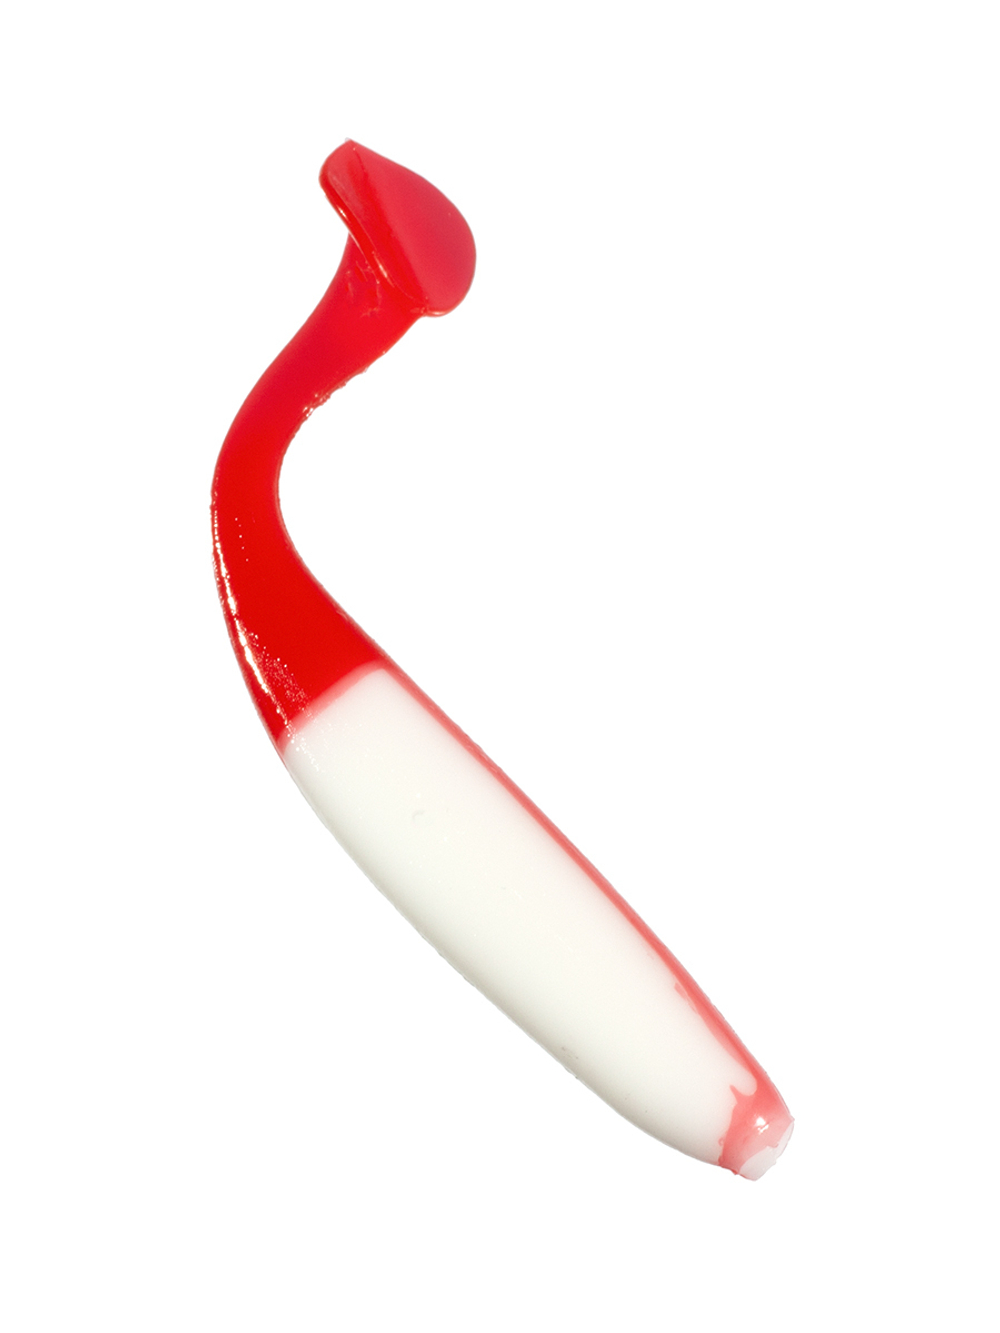 Приманка ZUB-IZI 86мм(3,4")-5шт, (цвет 010) белое тело-красный хвост